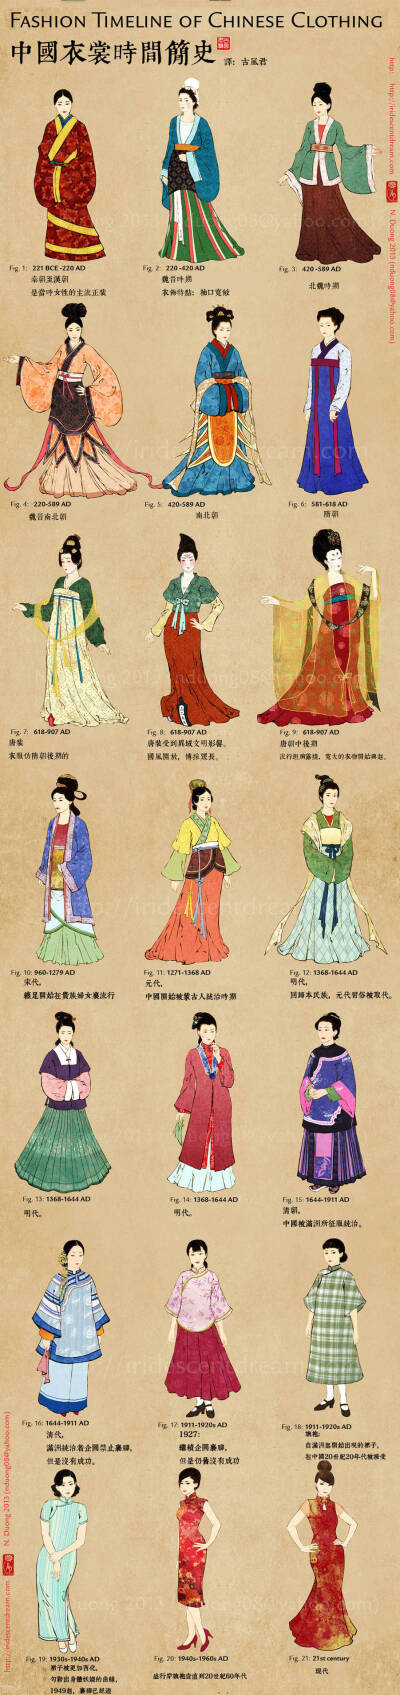 色彩明丽的中国服装的时间简史（全），从汉服到唐装。